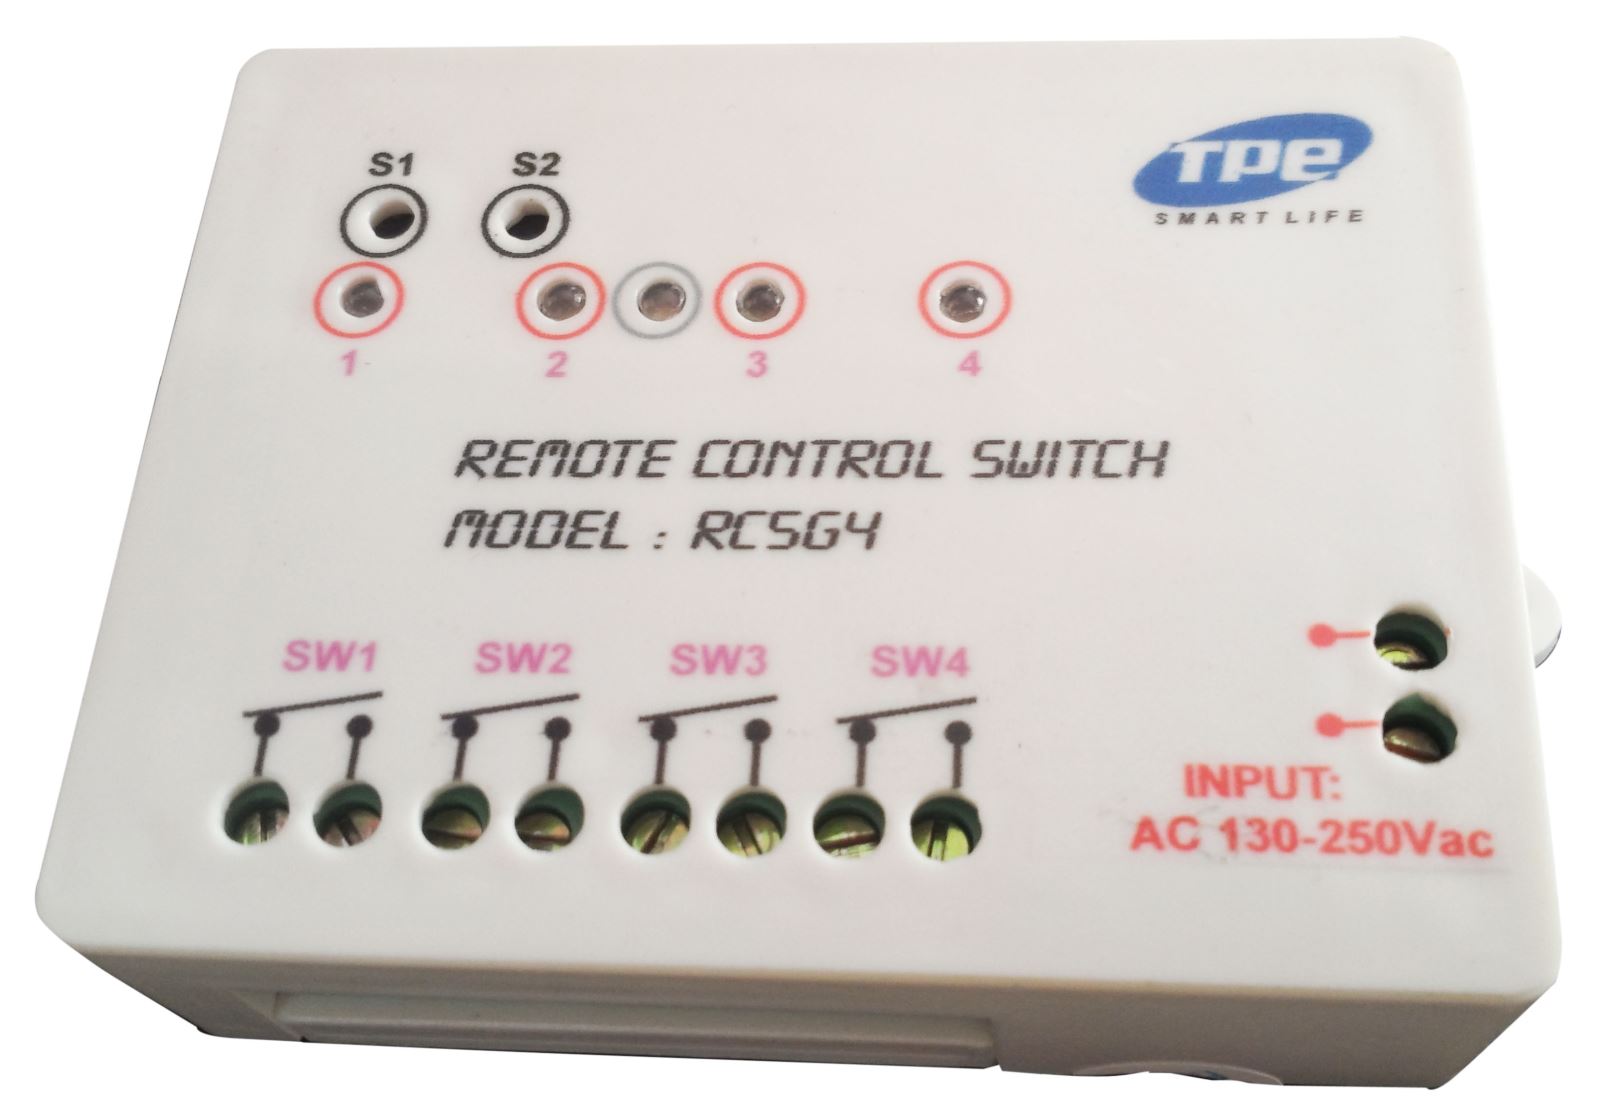 Rơ le điều khiển từ xa điều khiển 4 kênh RC5G4 giá rẻ.